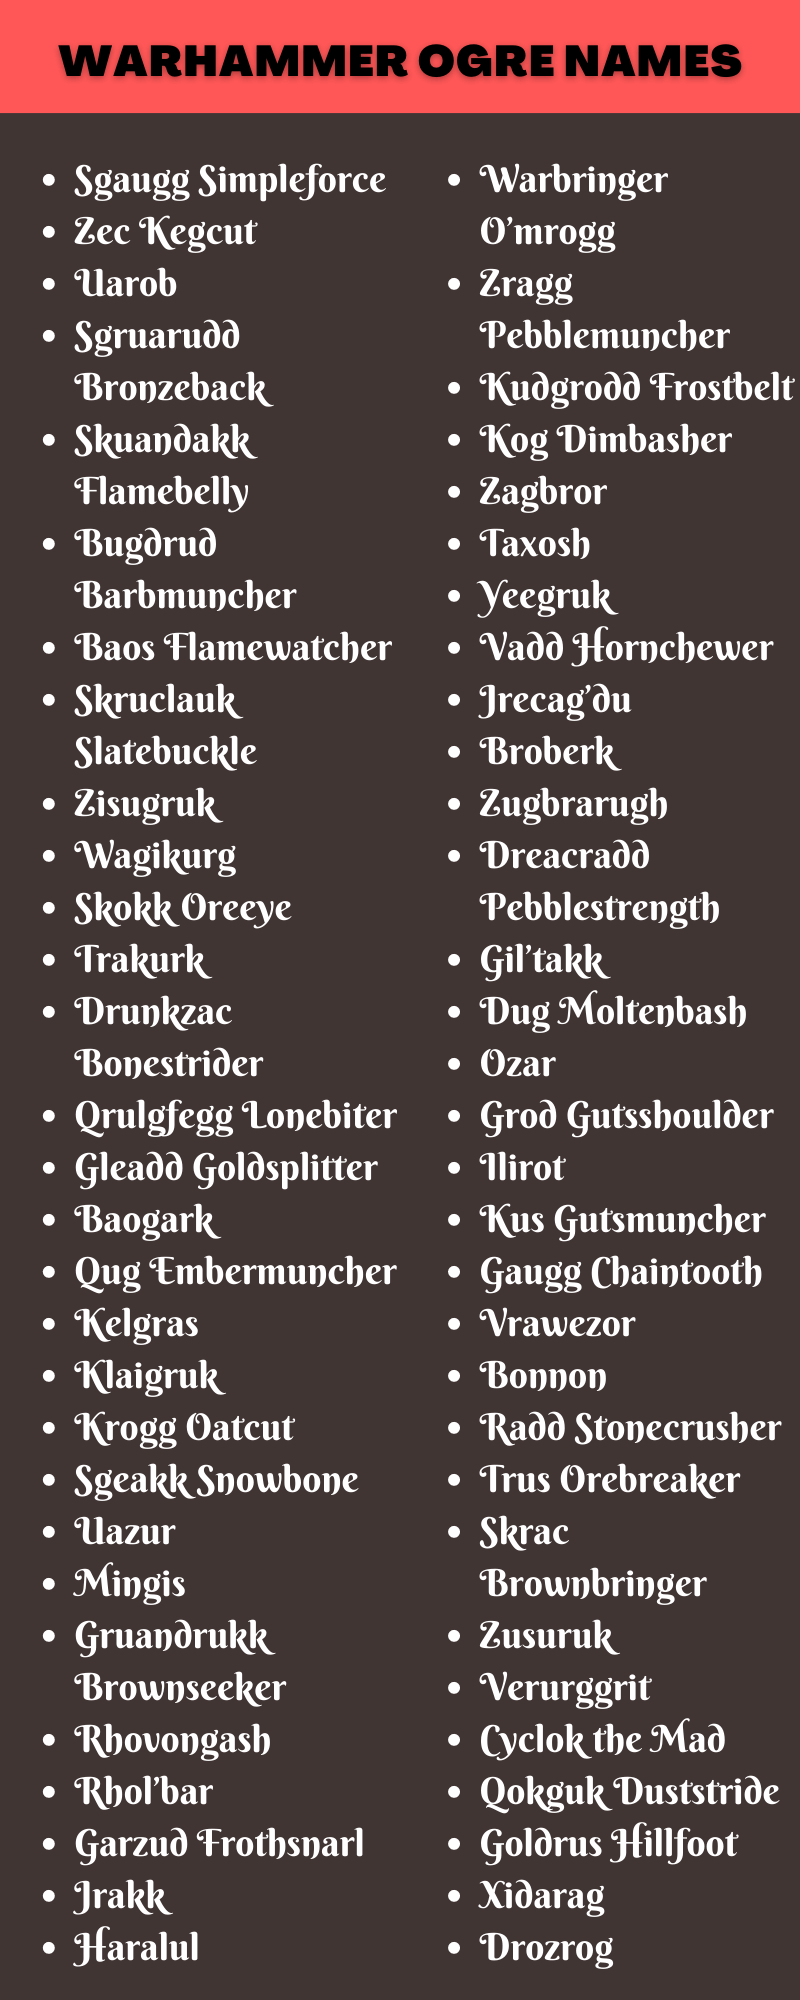 Warhammer Ogre Names